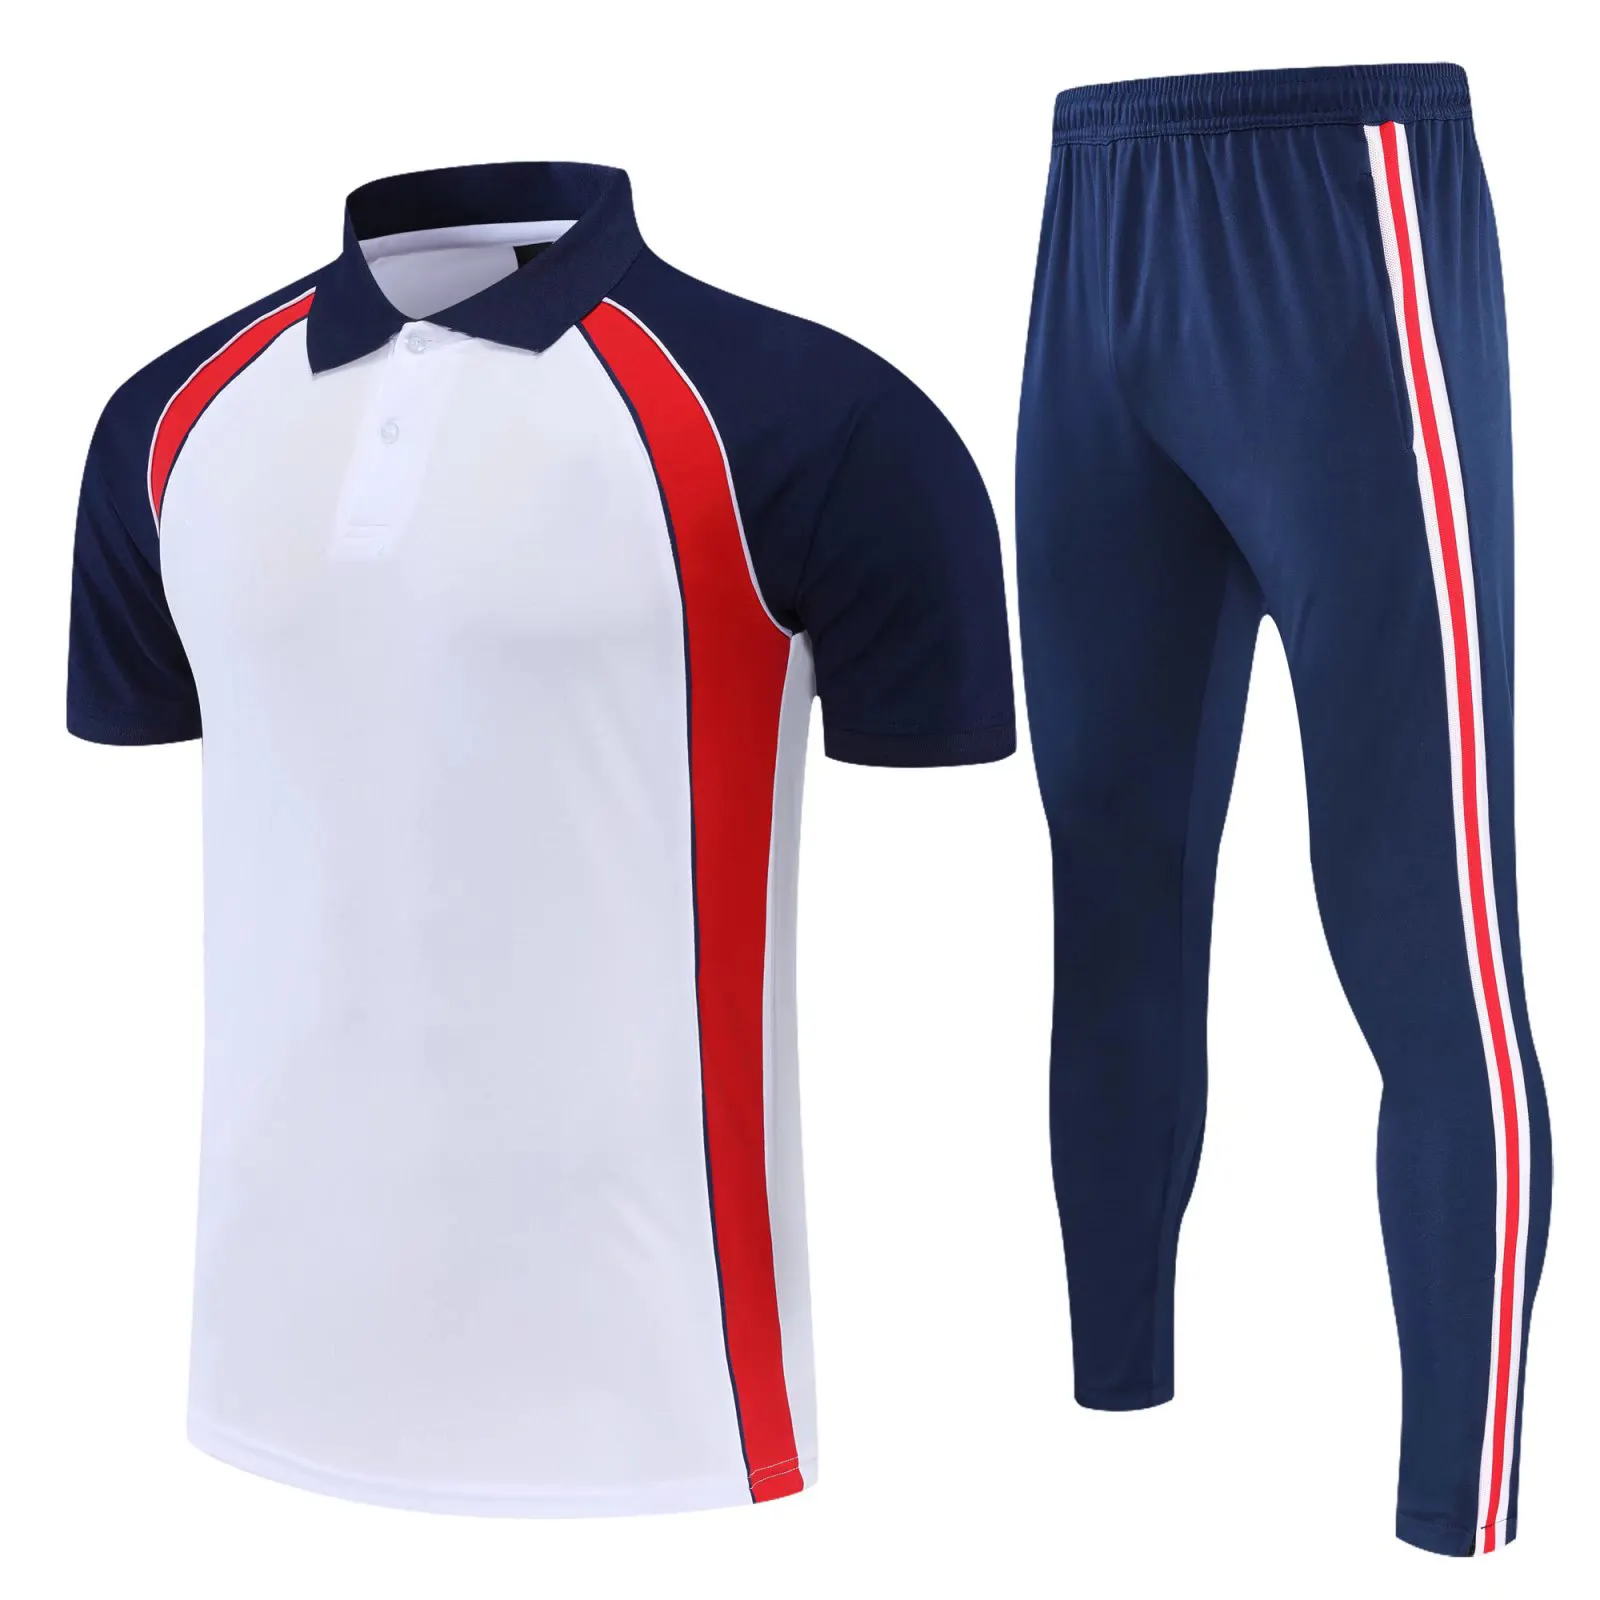 İlkbahar/yaz çabuk kuruyan yakalı tişört erkek özel kısa kollu futbol POLO GÖMLEK kısa kollu futbol forması